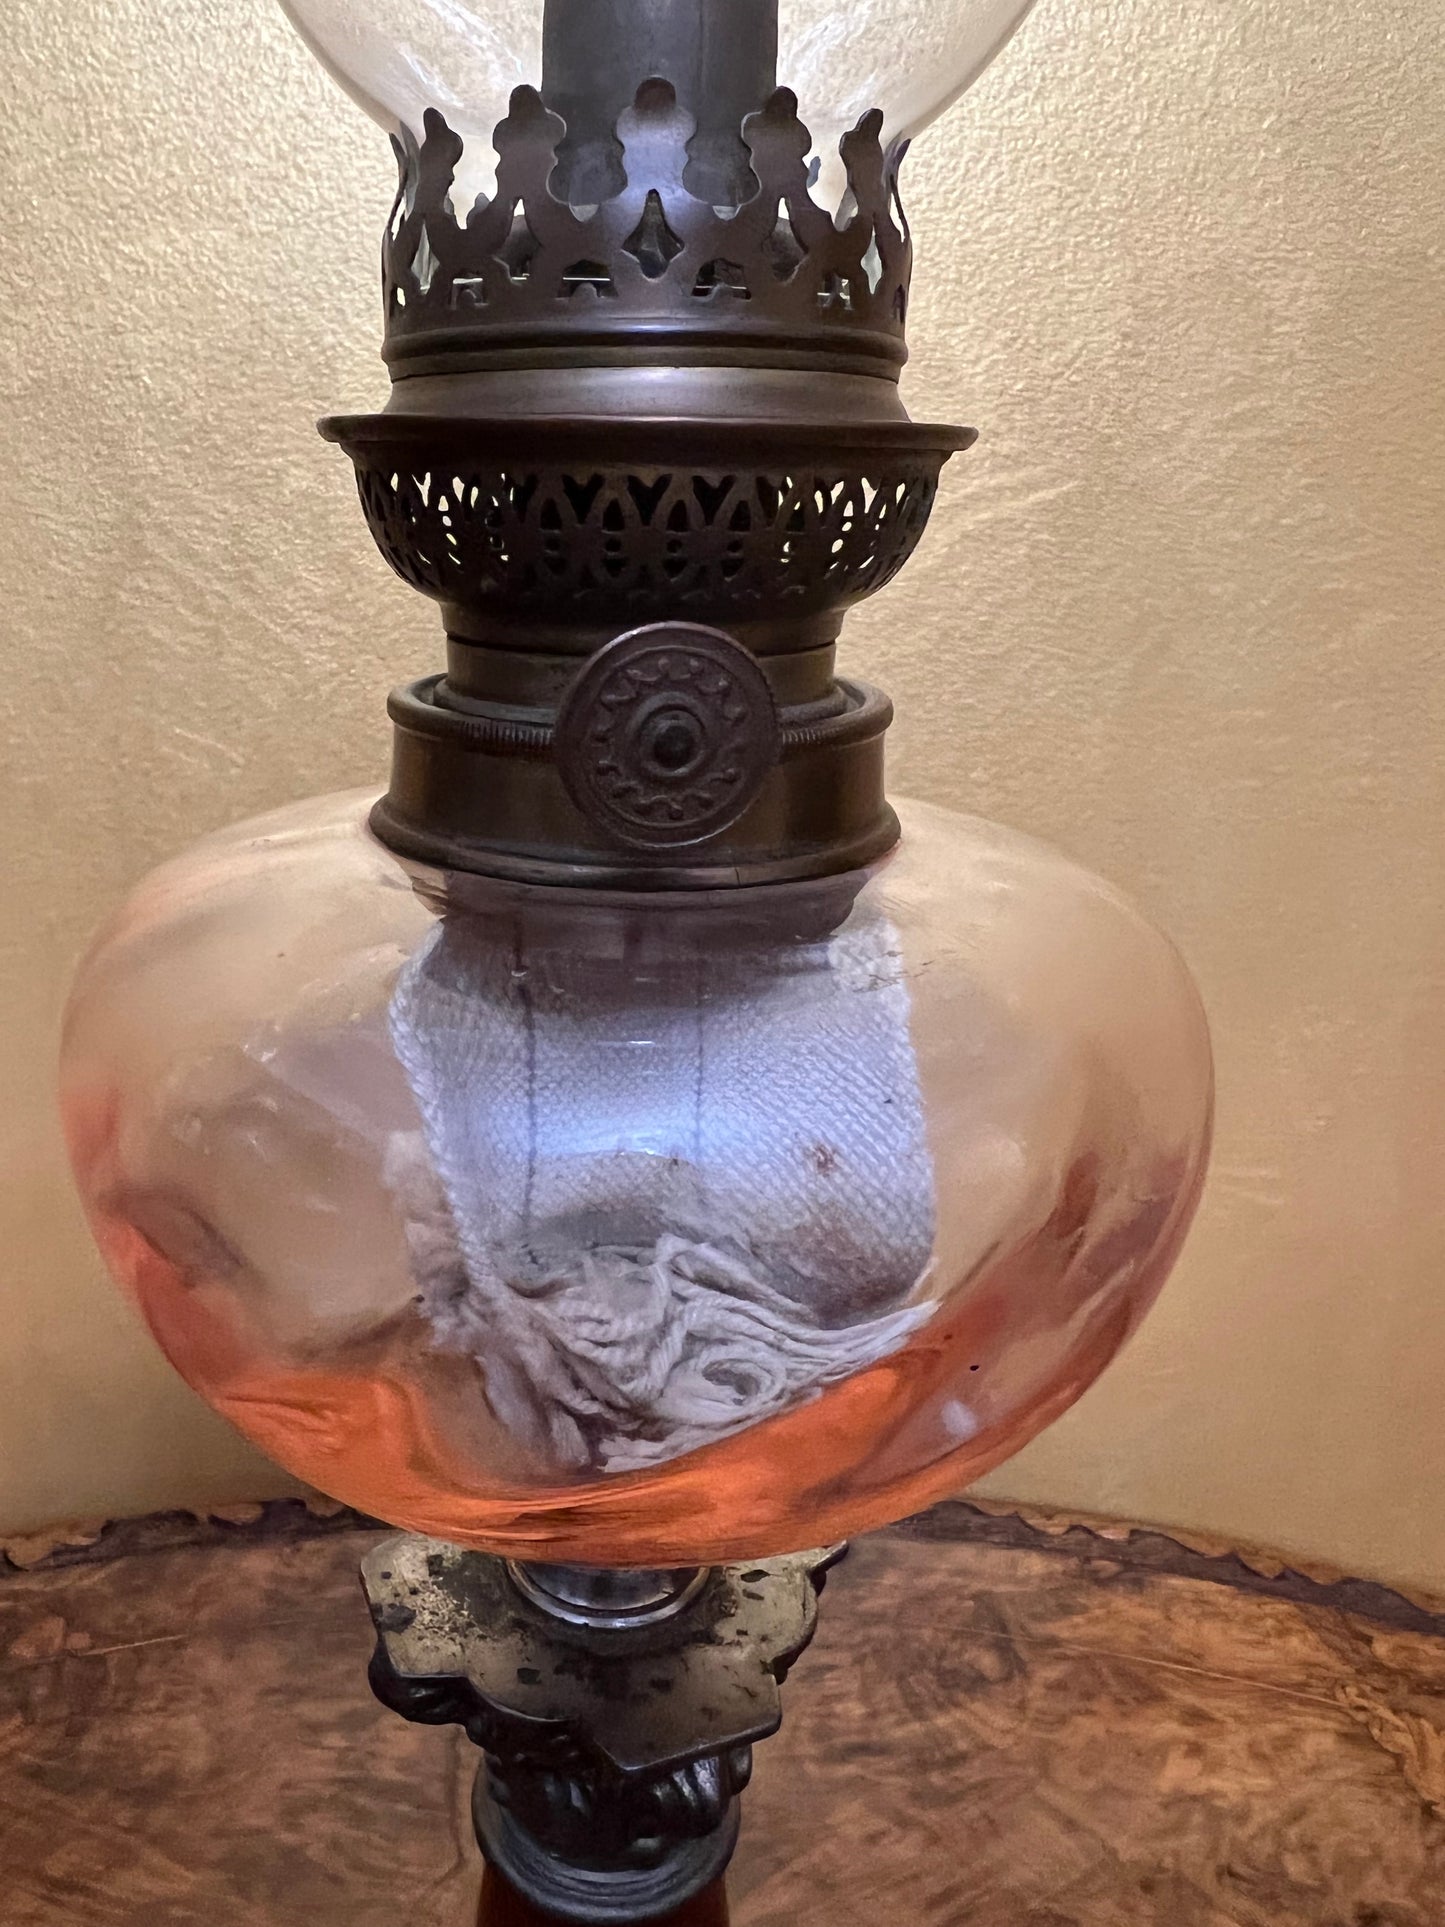 Antique Marble Spelter Pink Glass Kerosene Lamp